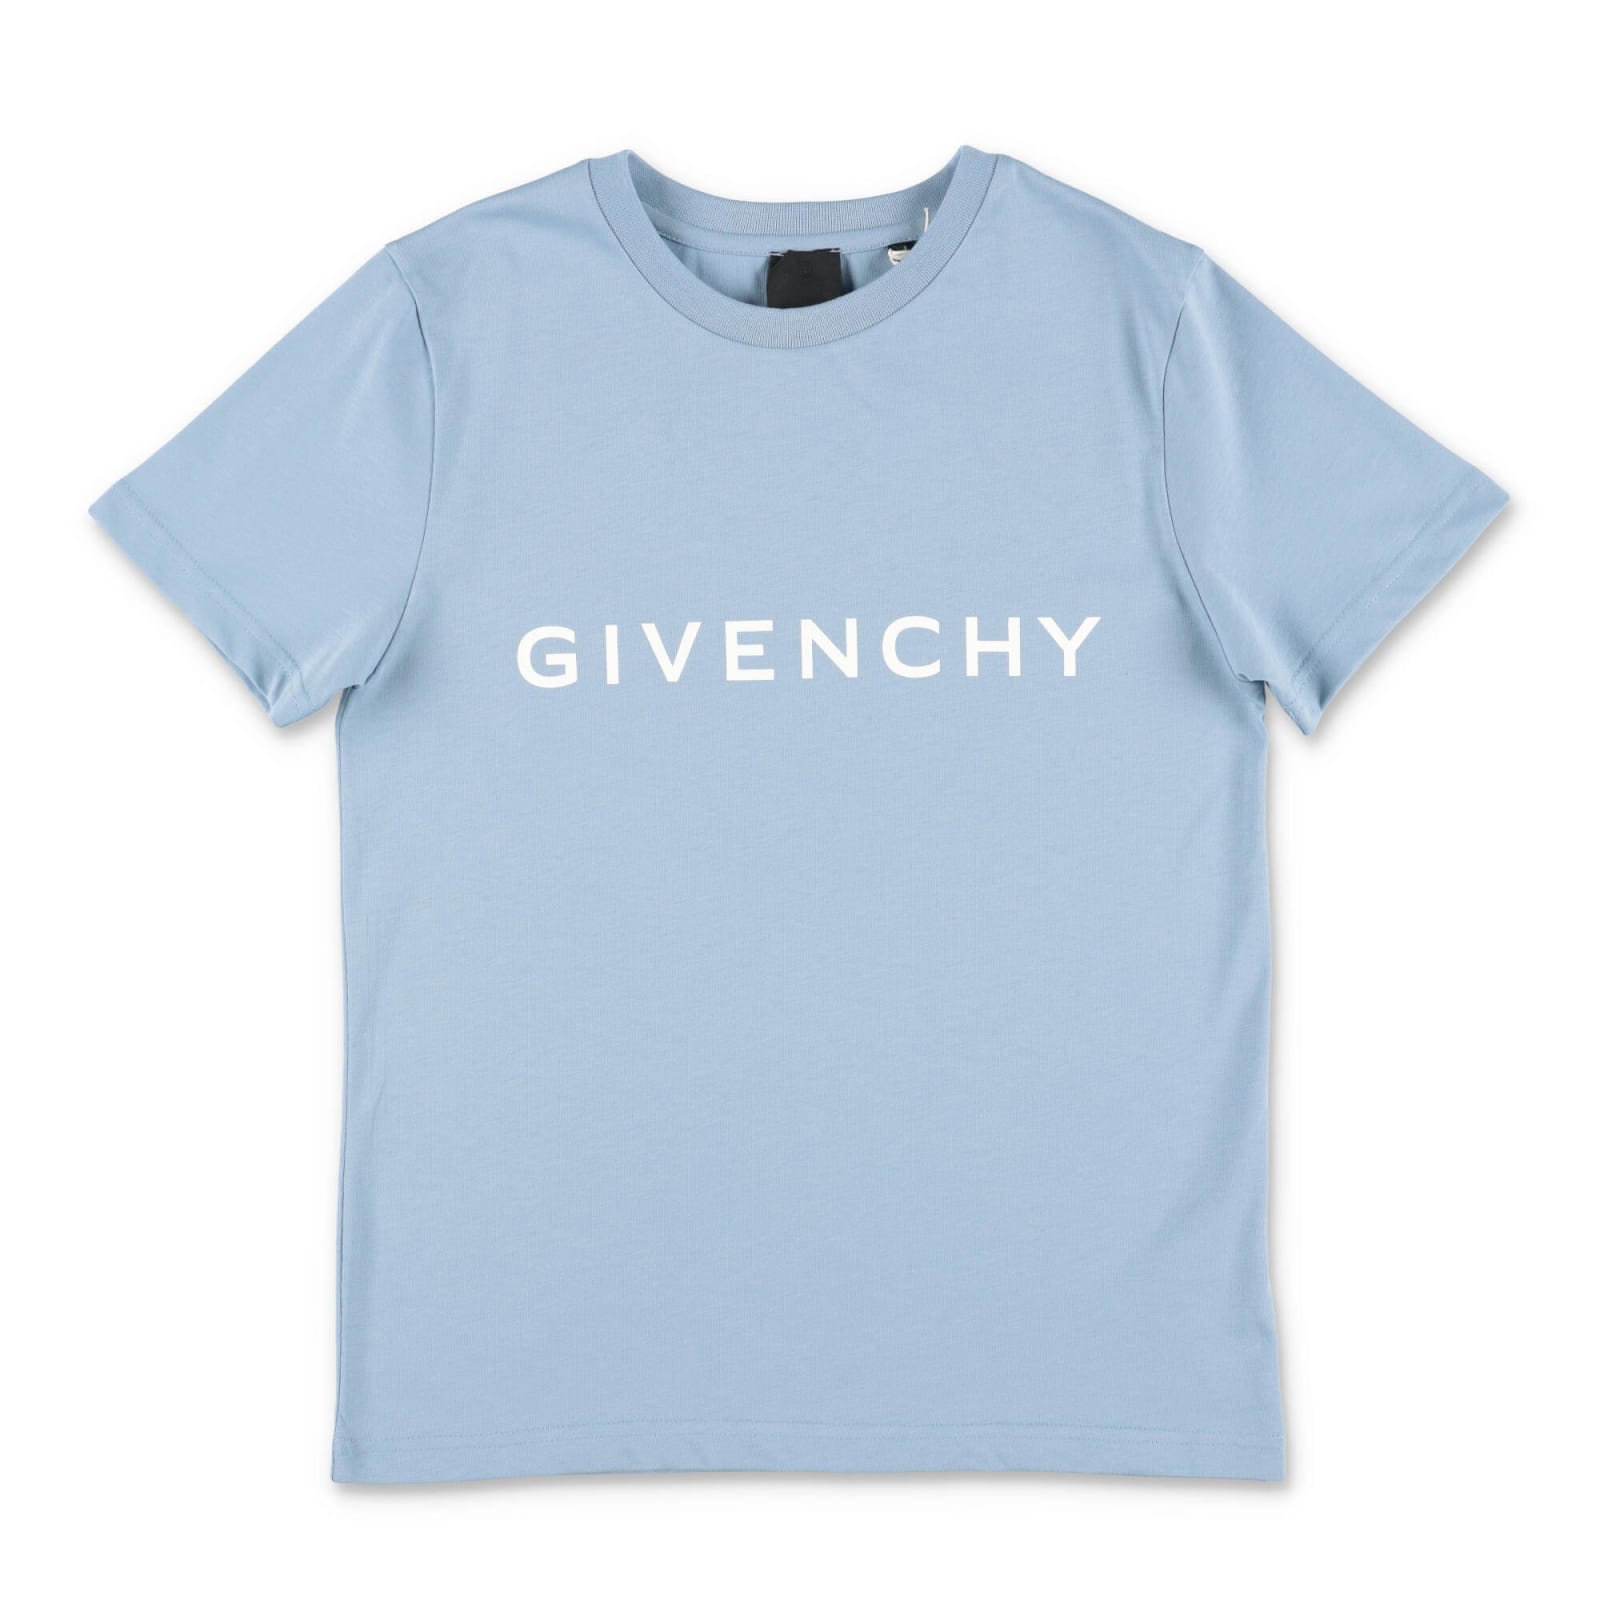 Givenchy T-shirt Blu Avio In Jersey Di Cotone Bambino